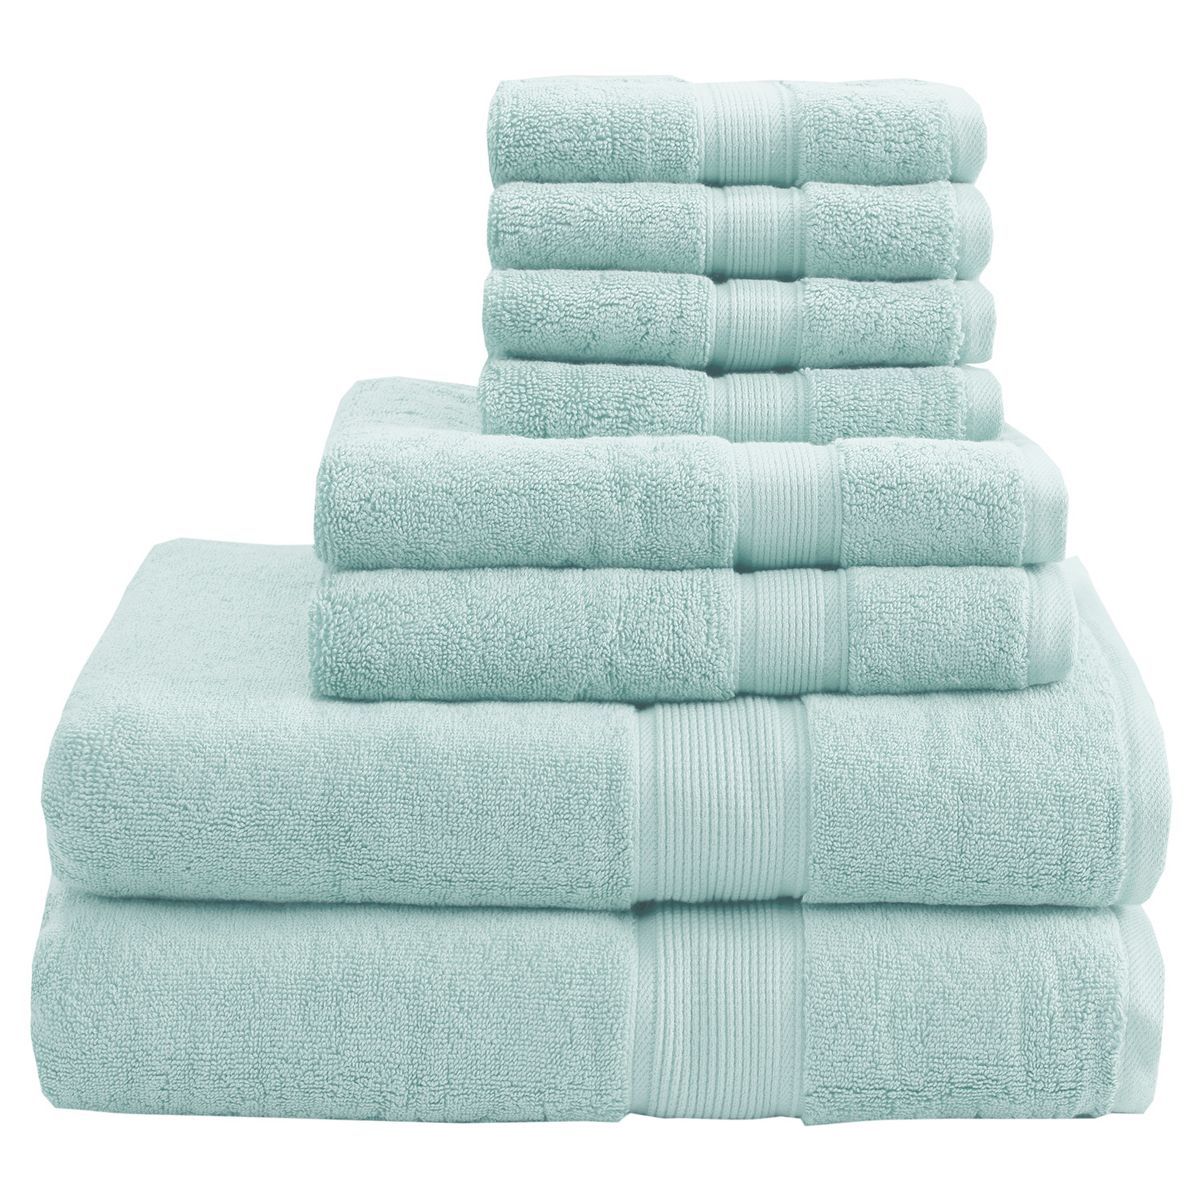 8pc Cotton Bath Towel Set | Target